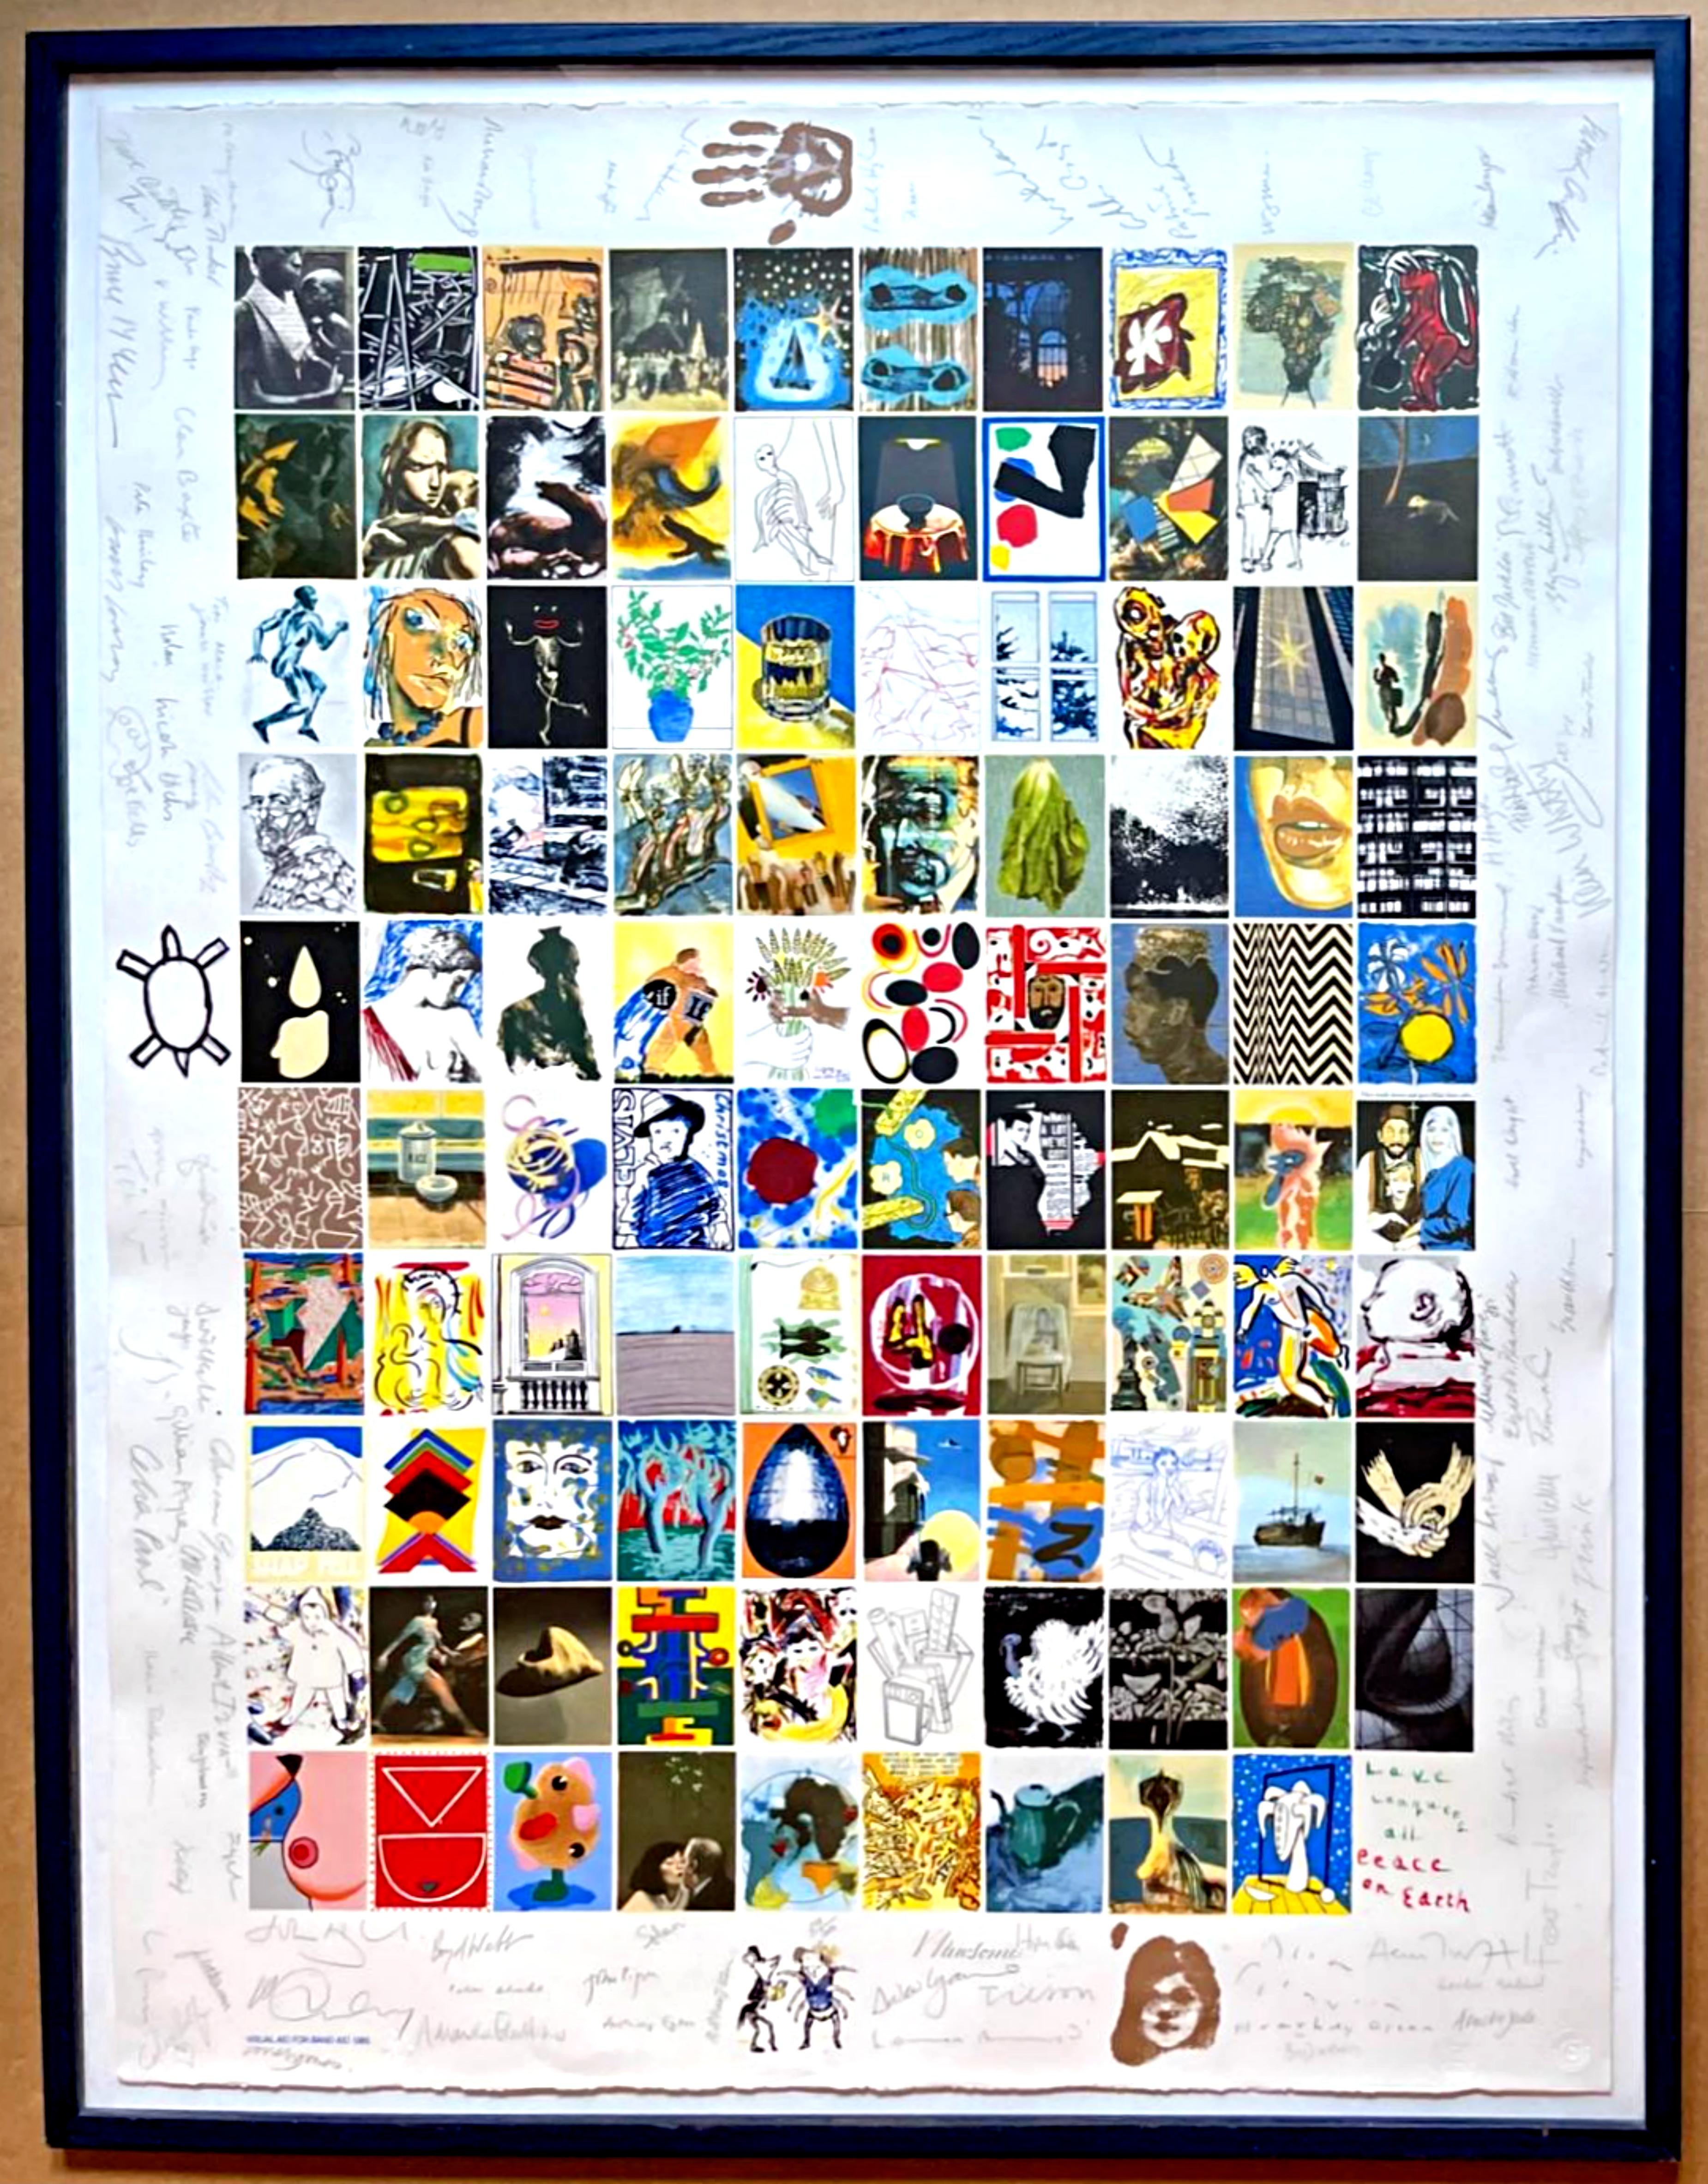 David Hockney, Bridget Riley, Joe Tilson, Howard Hodgkin, Peter Blake + 99 artists Figurative Print – Visual Aid for Band Aid, Druck, entworfen und von 104 renommierten Künstlern von Hand signiert